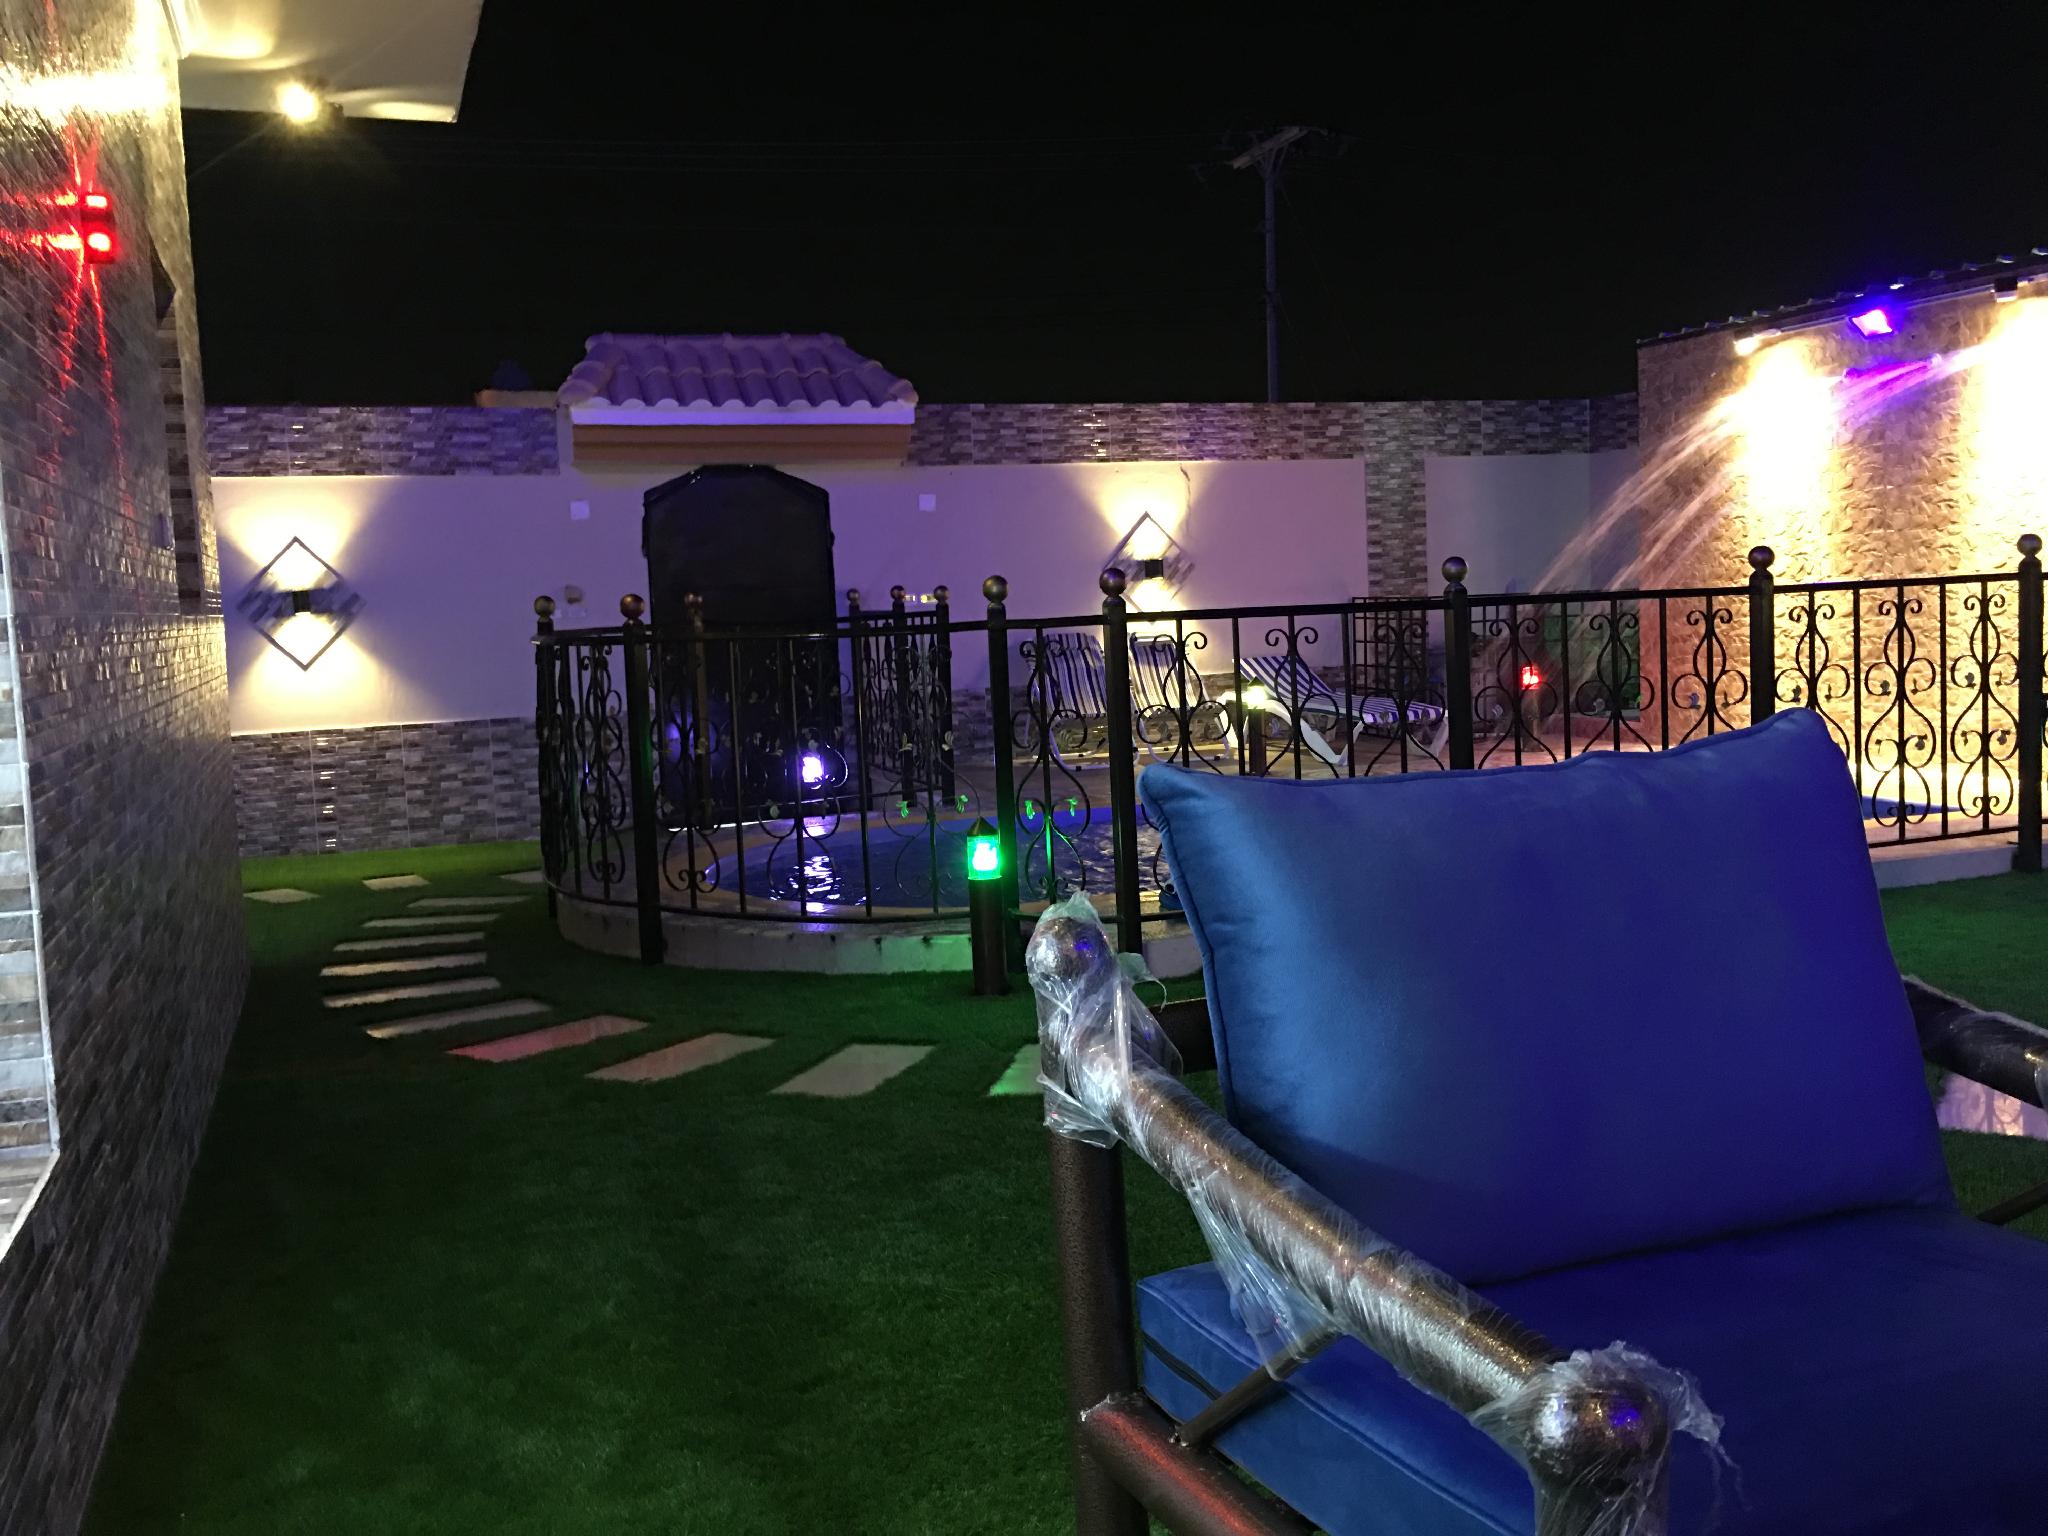 شاليه فينيسيا حي الحرازات - Jeddah ジッダ - Saudi Arabia サウジアラビアのホテル